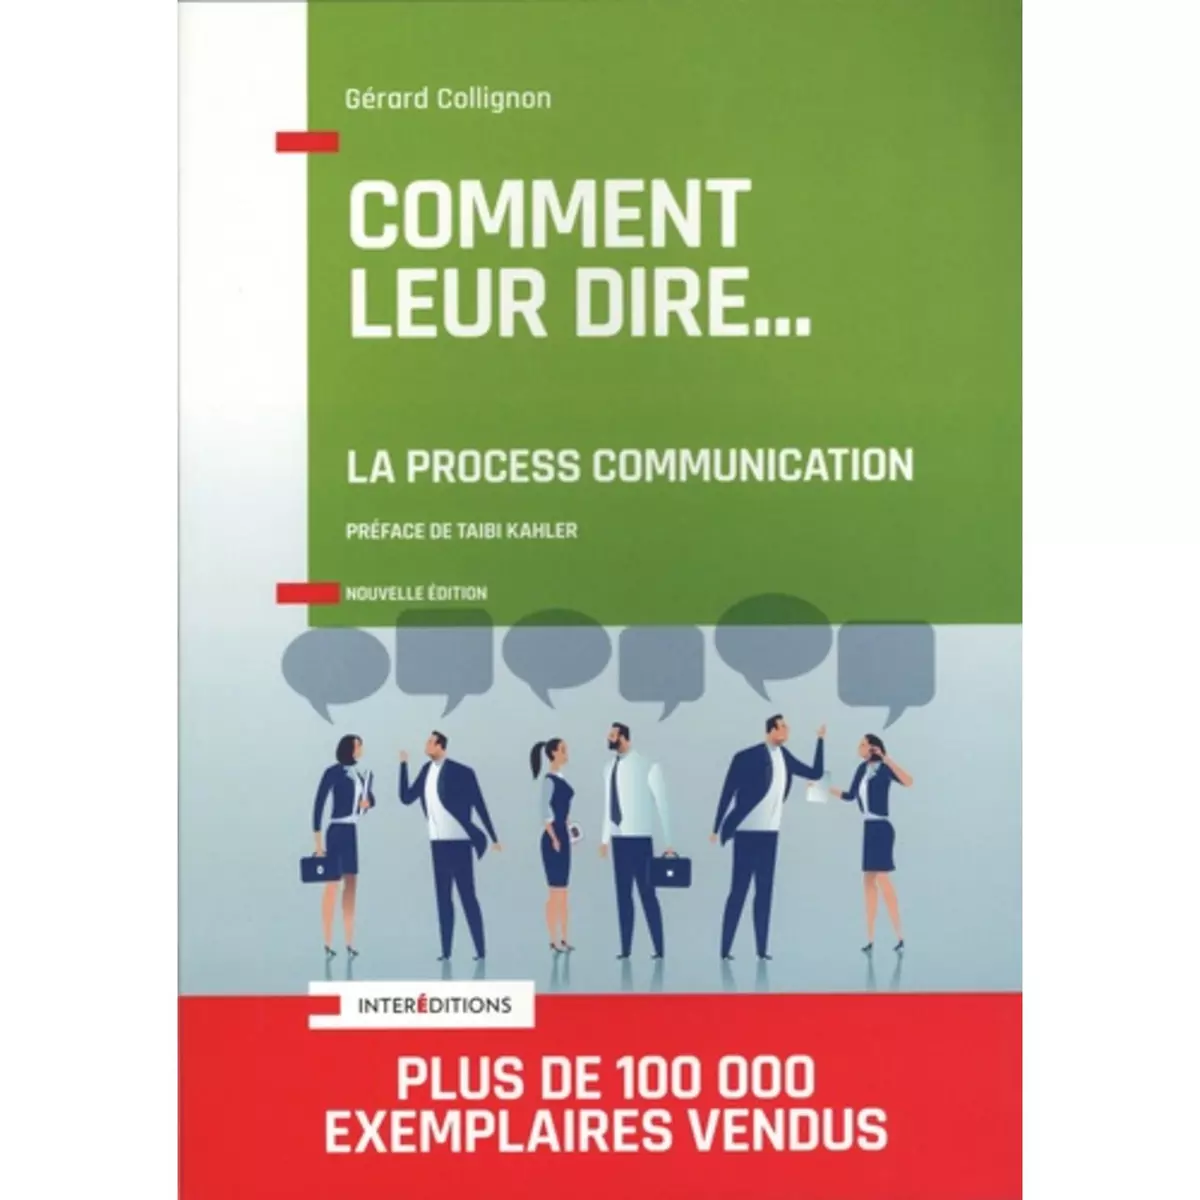  COMMENT LEUR DIRE... LA PROCESS COMMUNICATION. 3E EDITION, Collignon Gérard